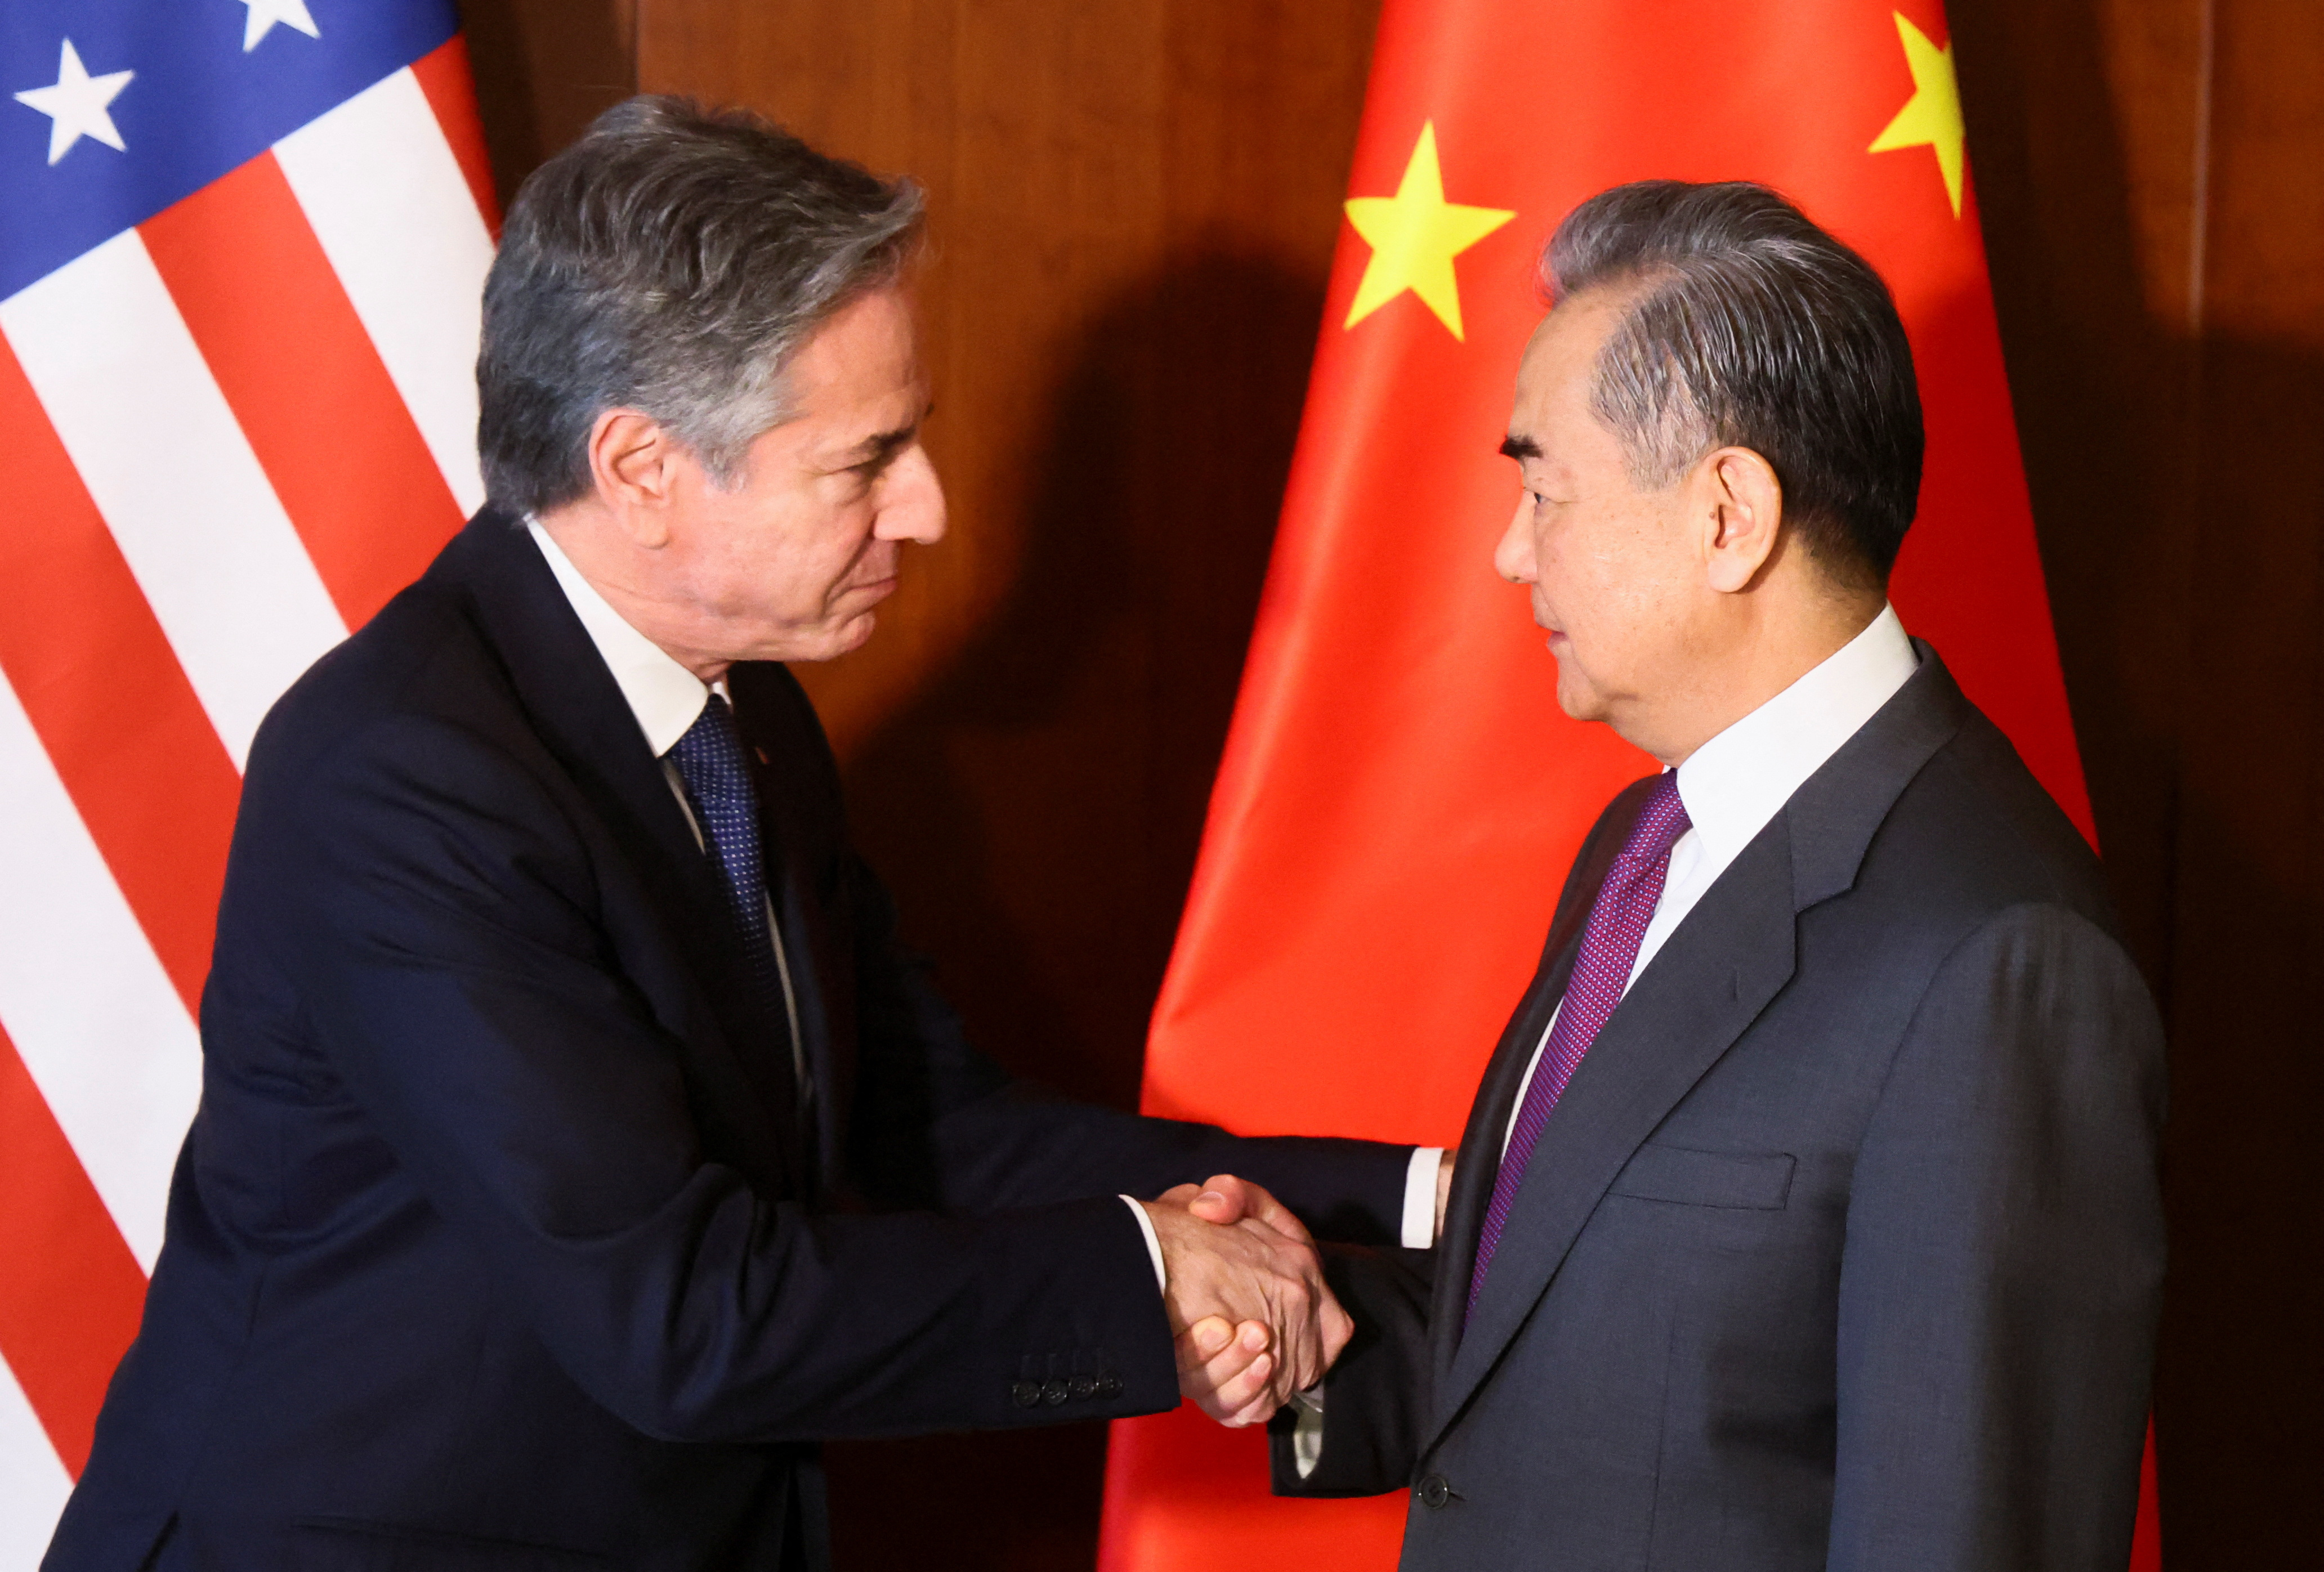 米中外相がミュンヘンで会談、「建設的な」協議と中国外務省 - ロイター (Reuters Japan)